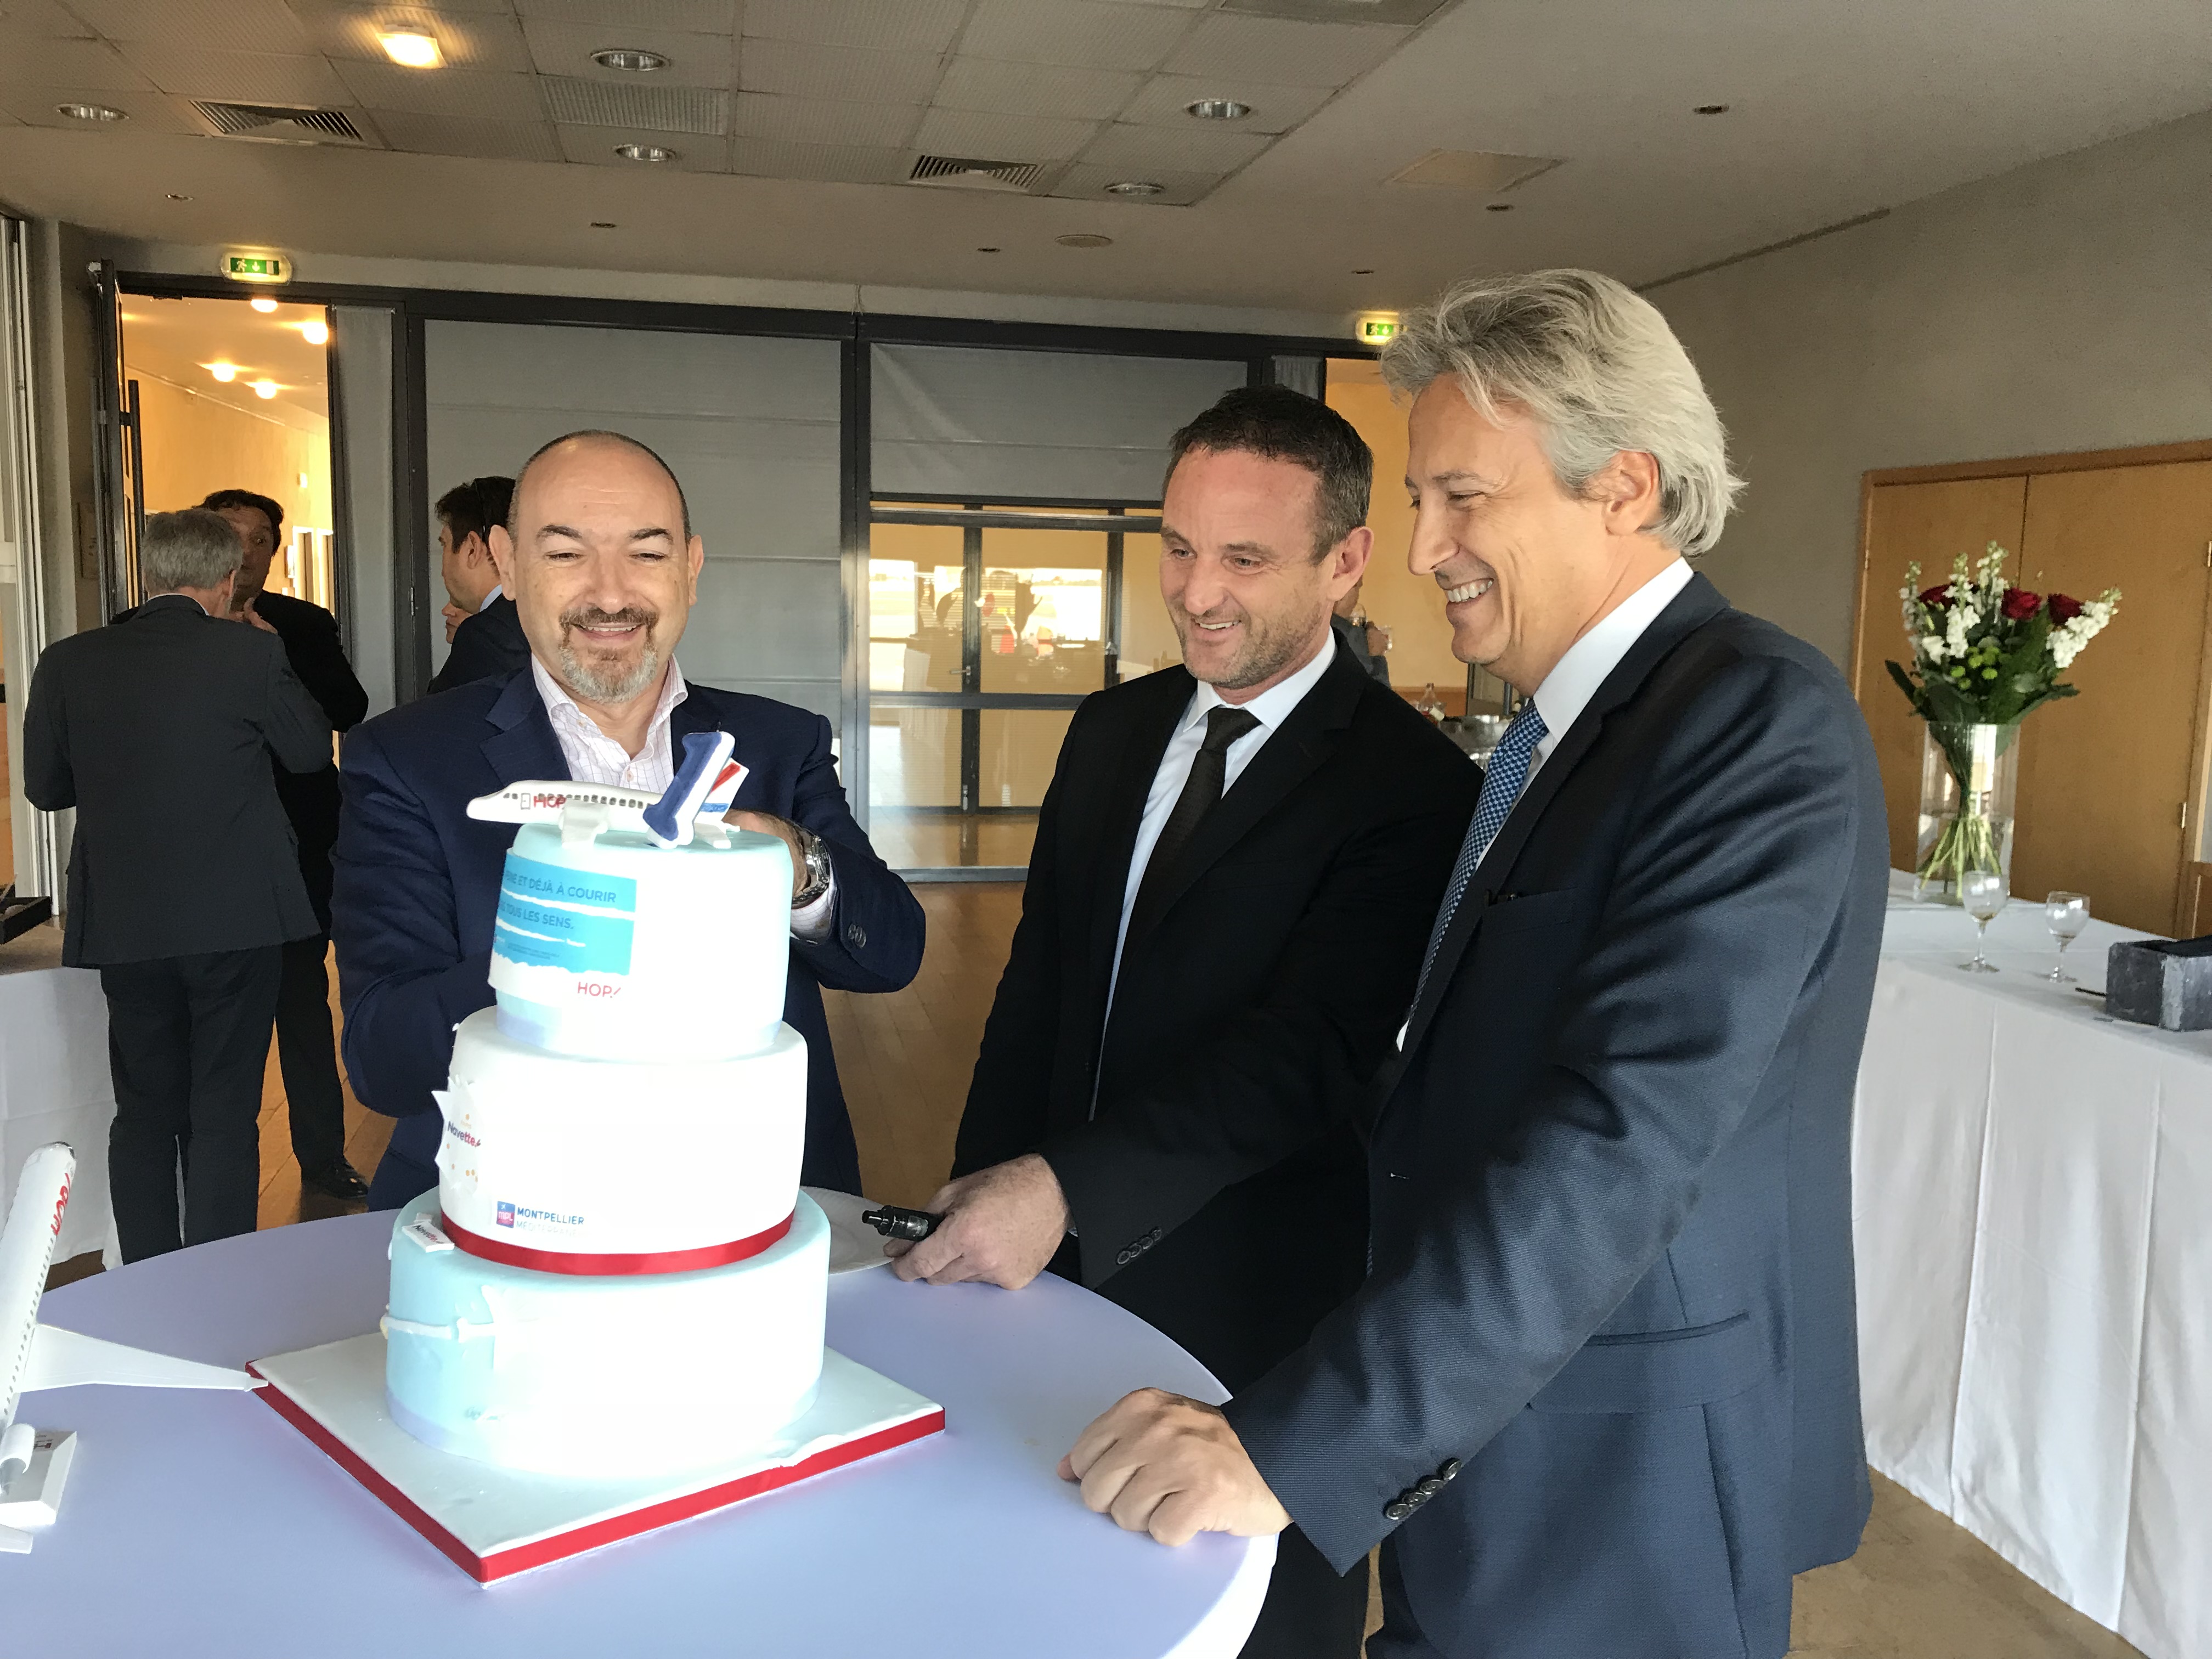 Montpellier fête le succès de la navette Hop! Air France